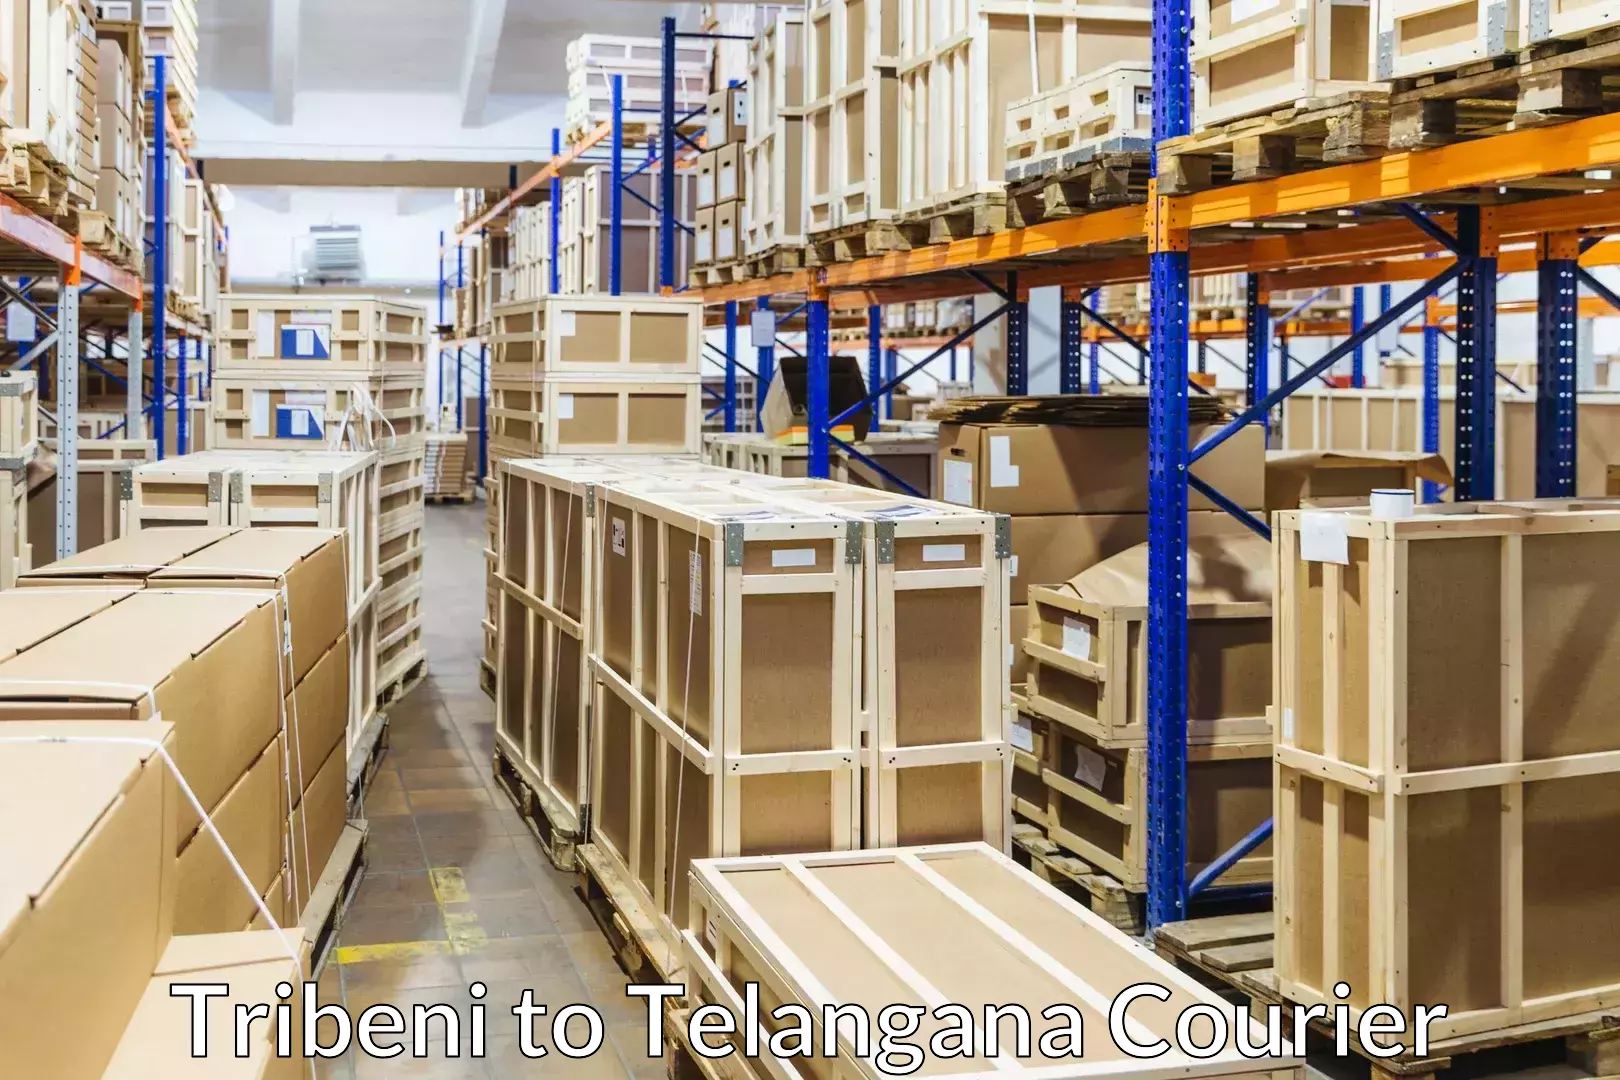 Professional moving company in Tribeni to Allapalli